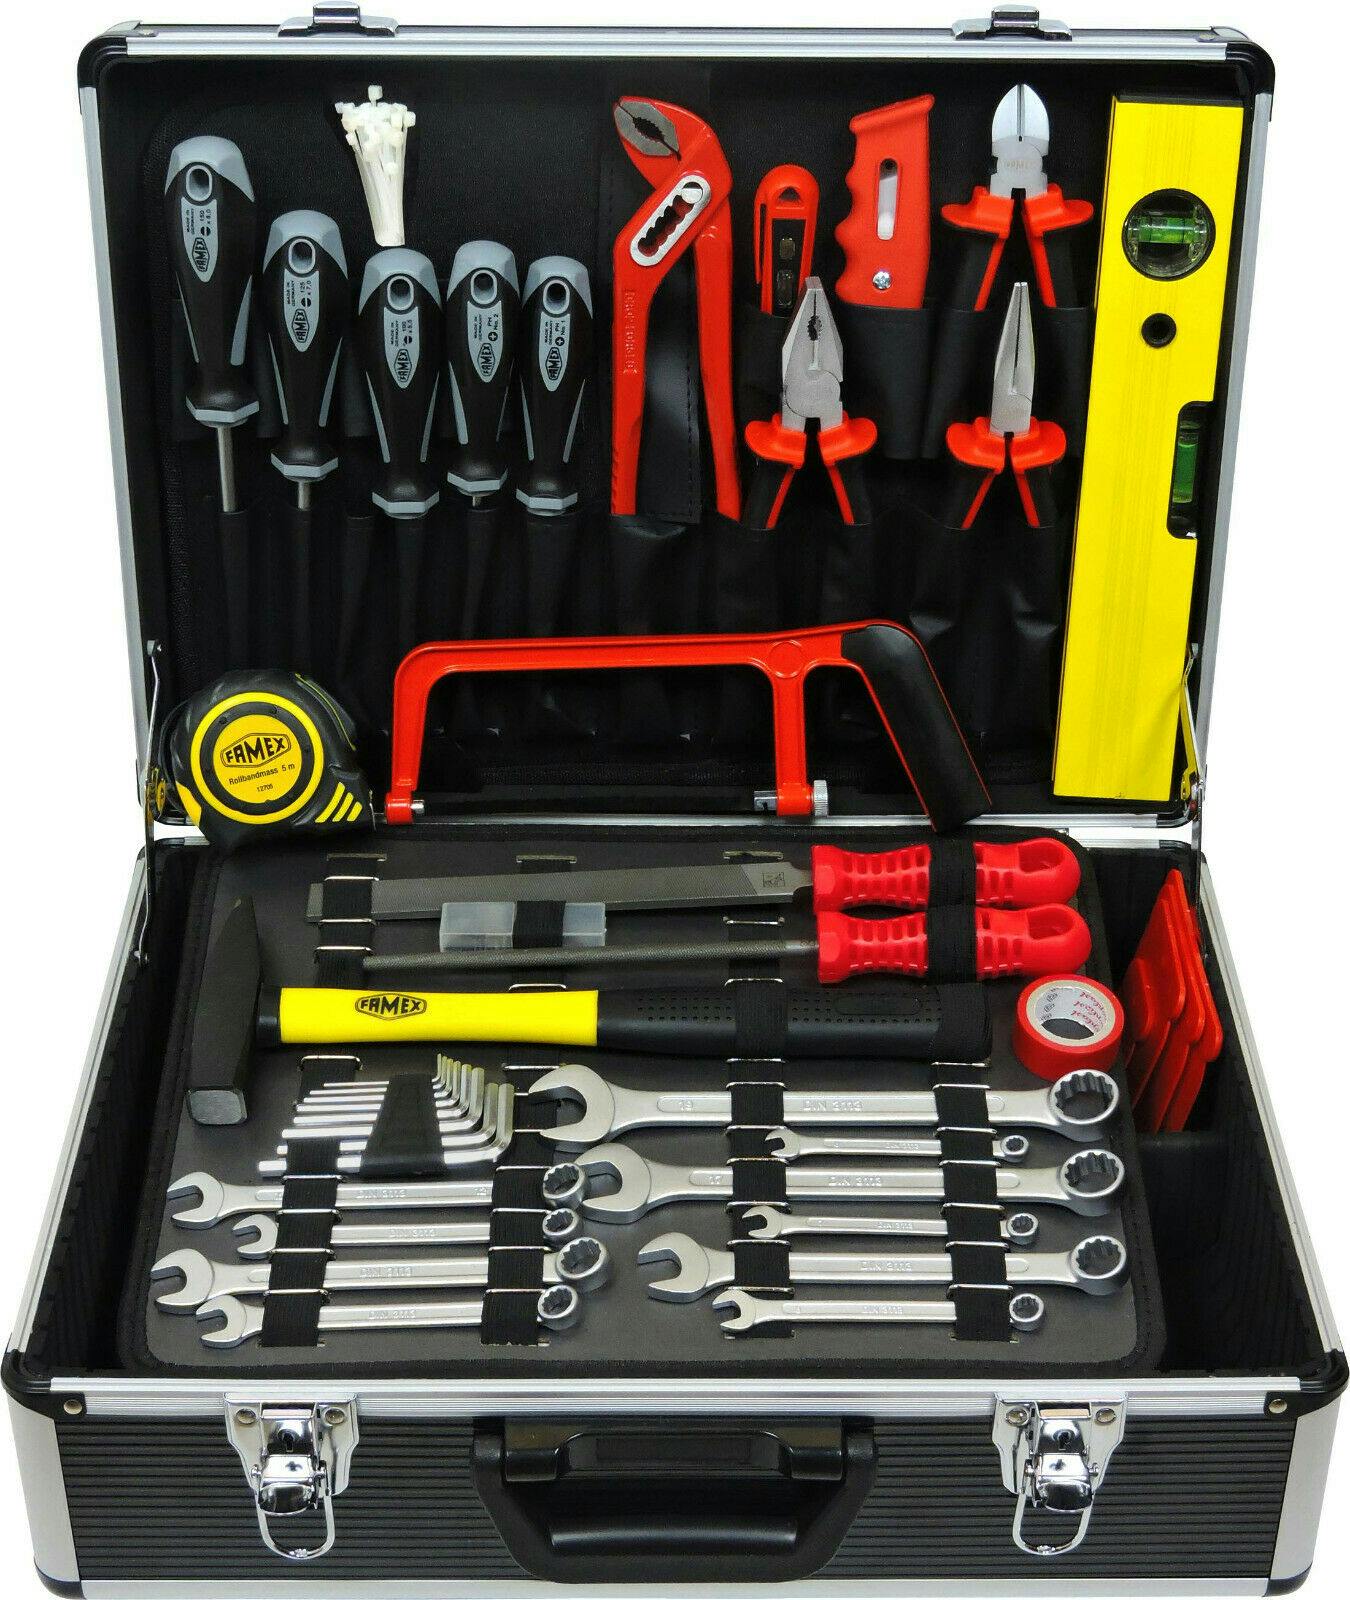 Alu FAMEX Werkzeugkoffer | METRO Werkzeugkiste - gefüllt mit Werkzeug Marktplatz 744-98